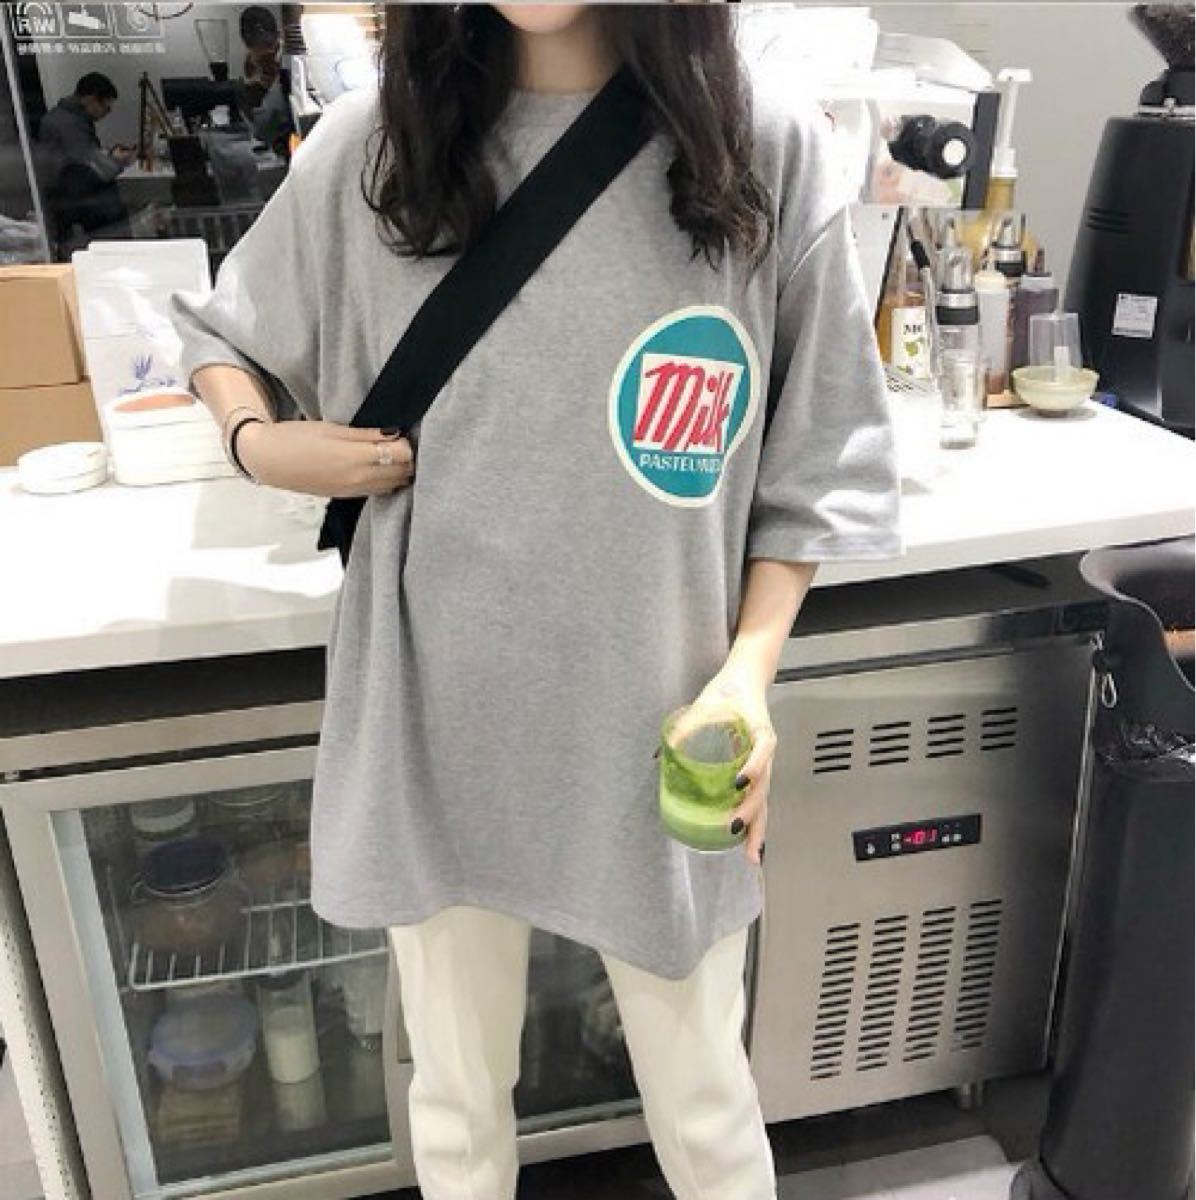 半袖Tシャツ☆オーバーサイズ☆4カラー☆milkロゴ☆トップス 